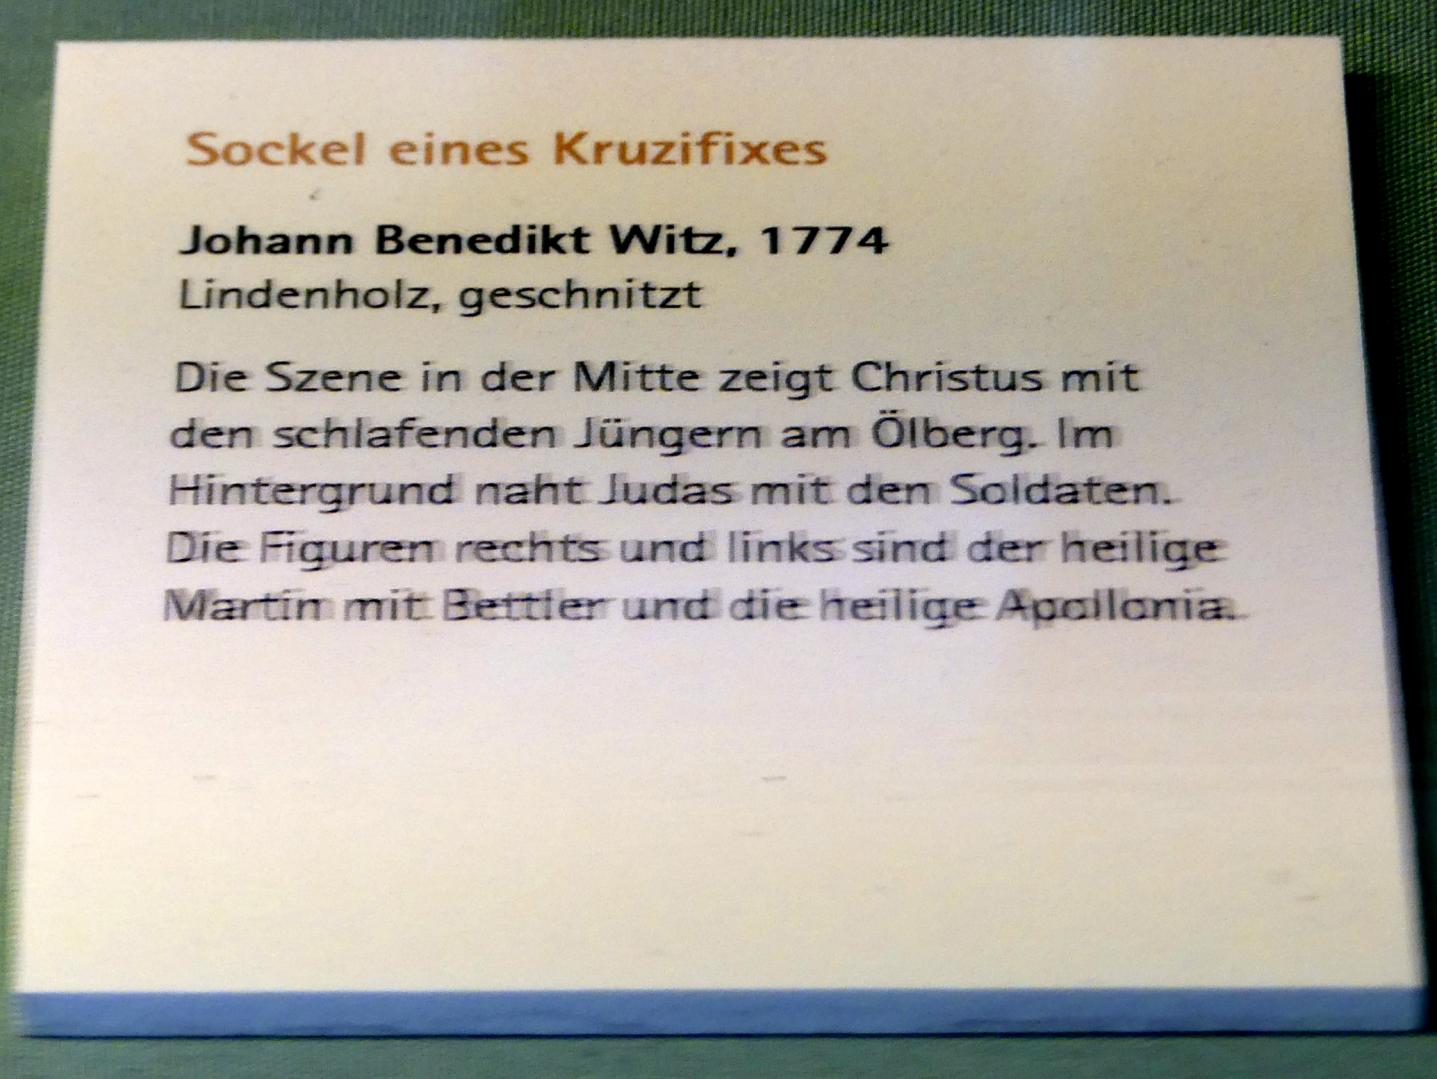 Johann Benedikt Witz (1747–1780), Sockel eines Kruzifixes, Würzburg, Museum für Franken (ehem. Mainfränkisches Museum), Bozzetti-Sammlung, 1774, Bild 2/2